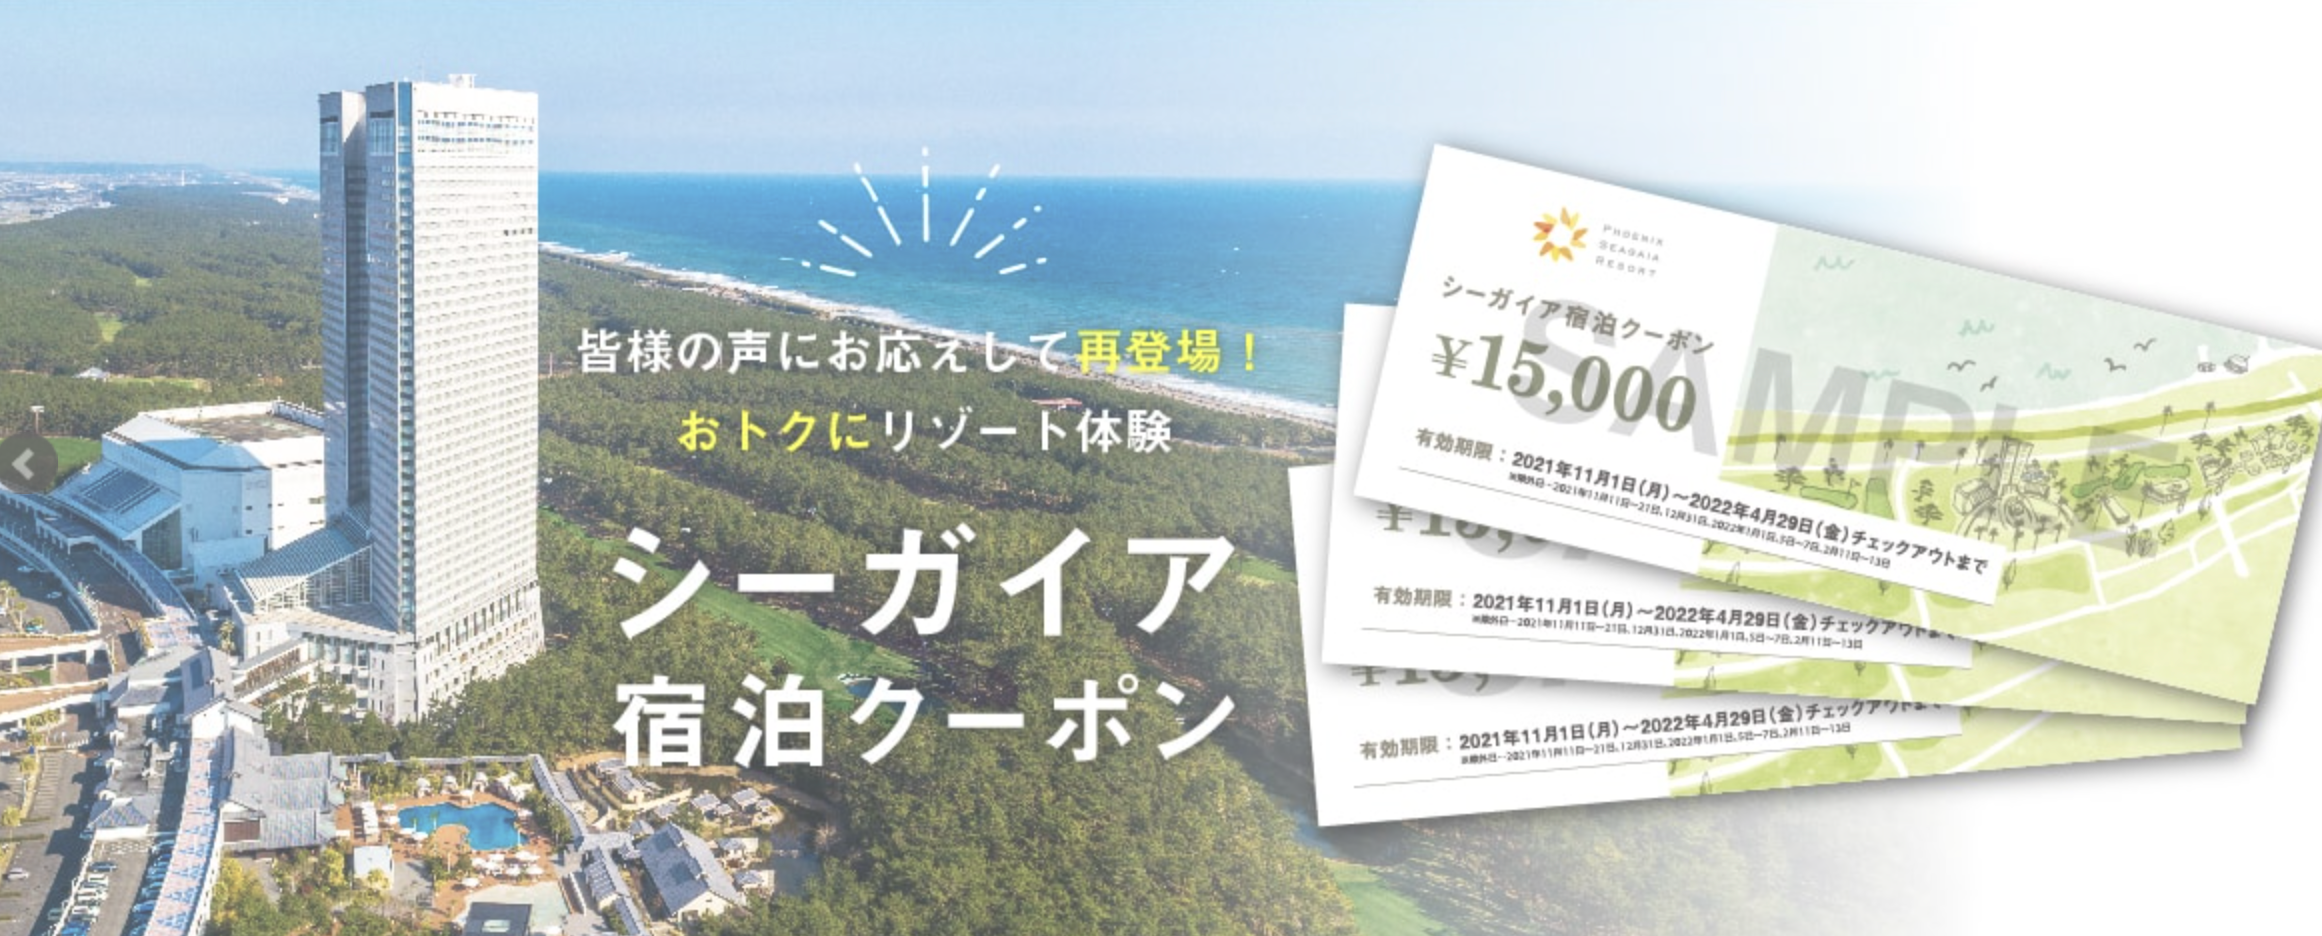 売上実績NO.1 シーガイア シェラトン宮崎 宿泊クーポン ¥15,000×7枚 